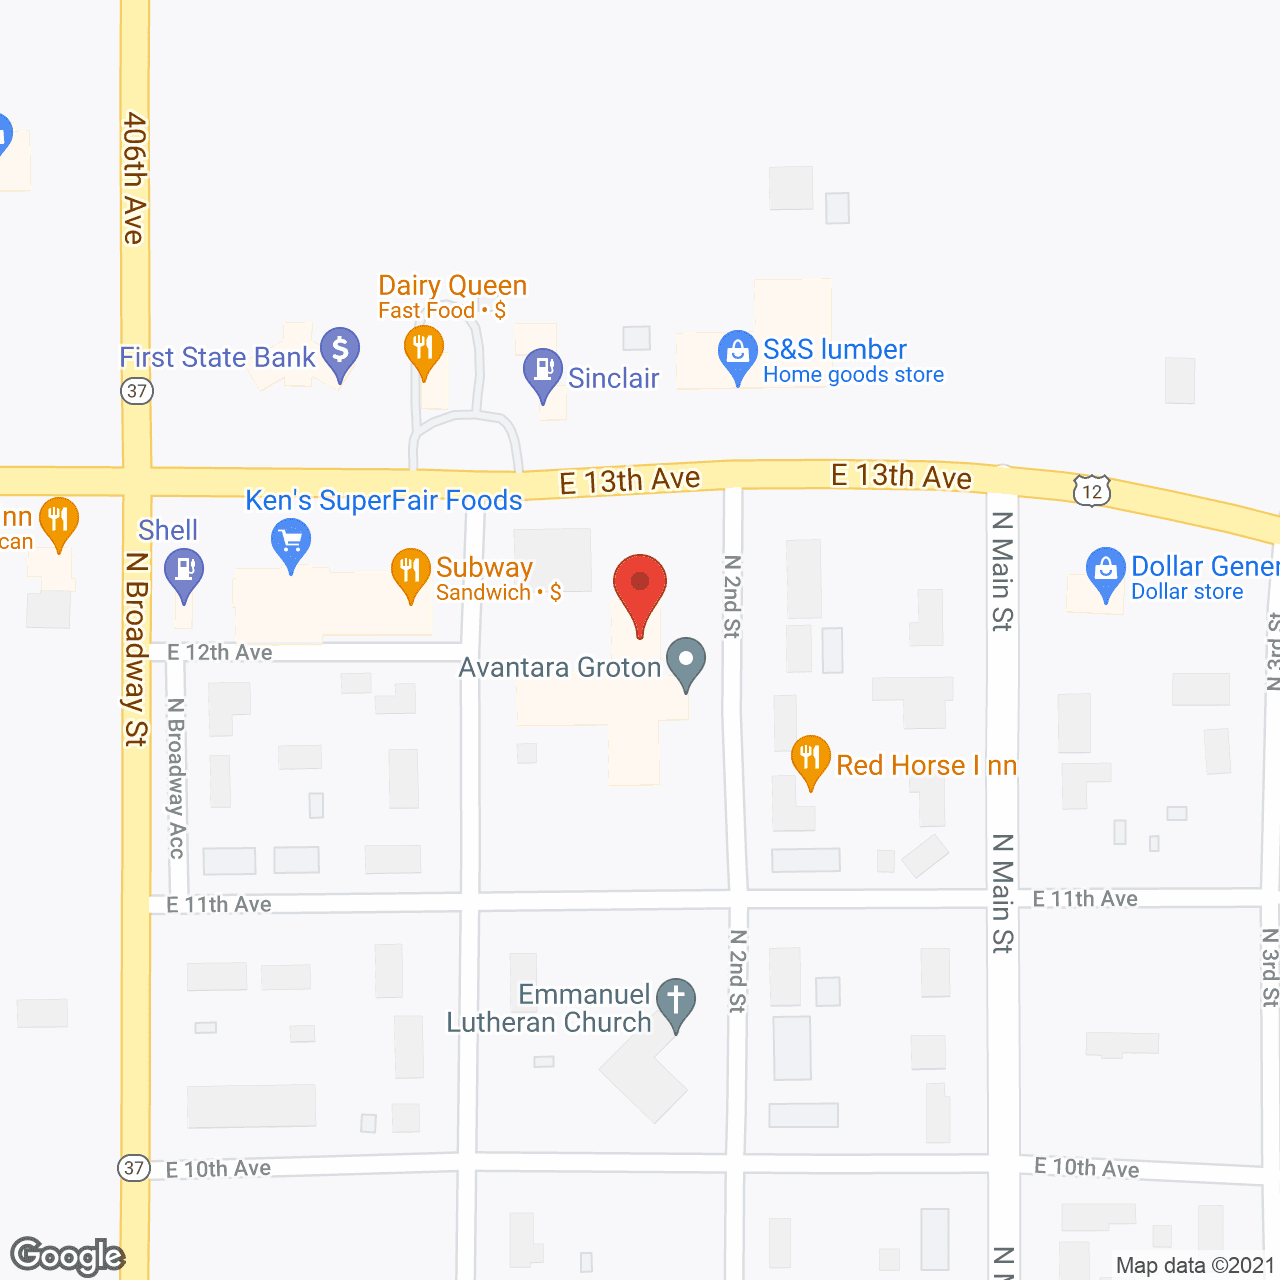 Golden LivingCenter - Groton in google map